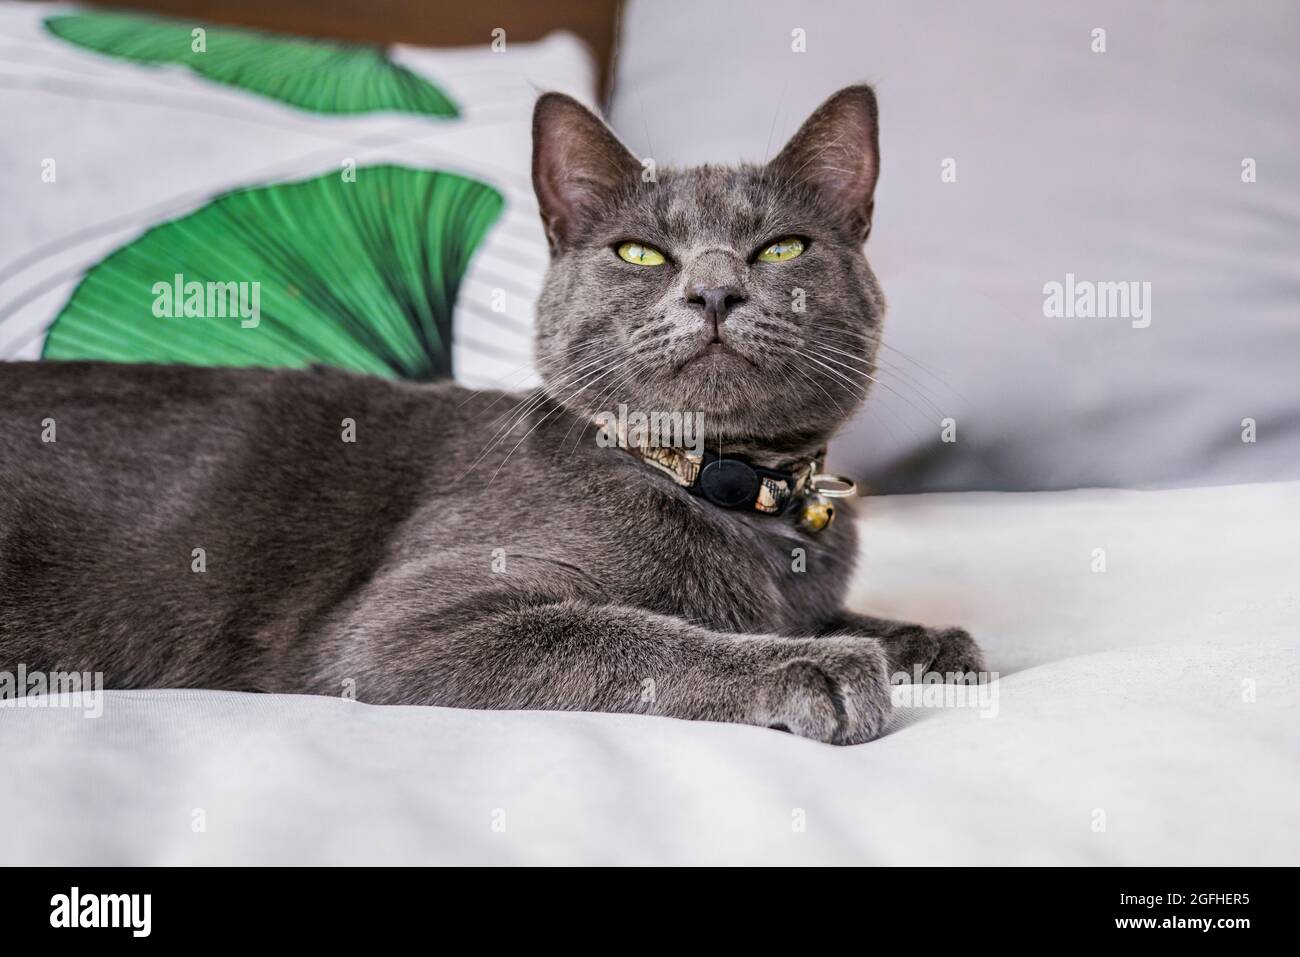 Eine junge graublaue Katze aus Russland auf einem Outdoor-Sofa, die mit einem entspannten, inhaltsorientierten Ausdruck die Kamera anschaut. Stockfoto